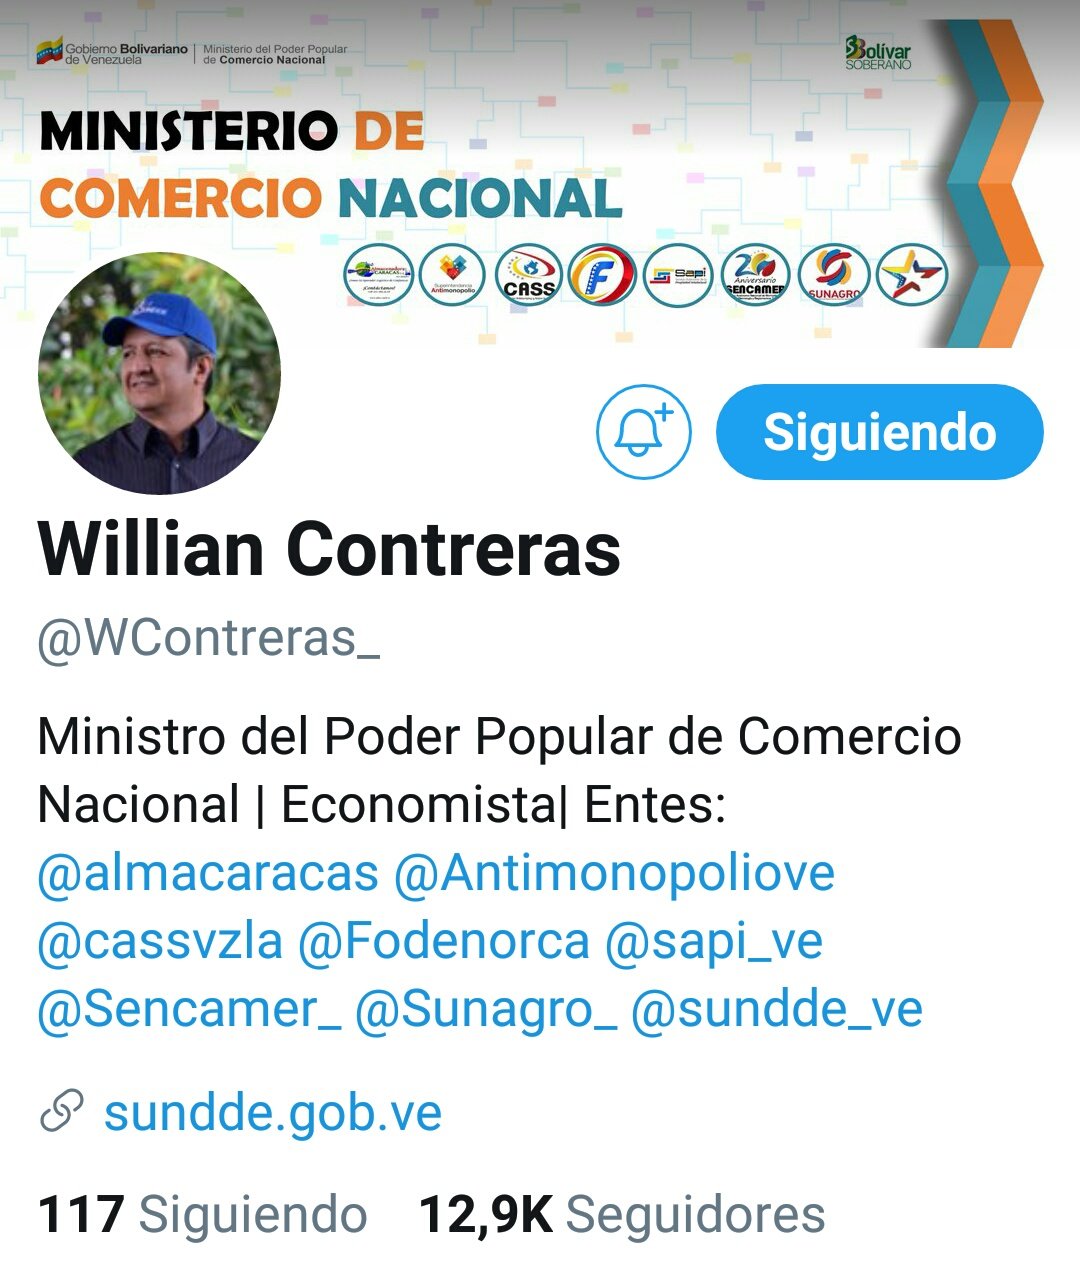 William Contreras - Wikipedia